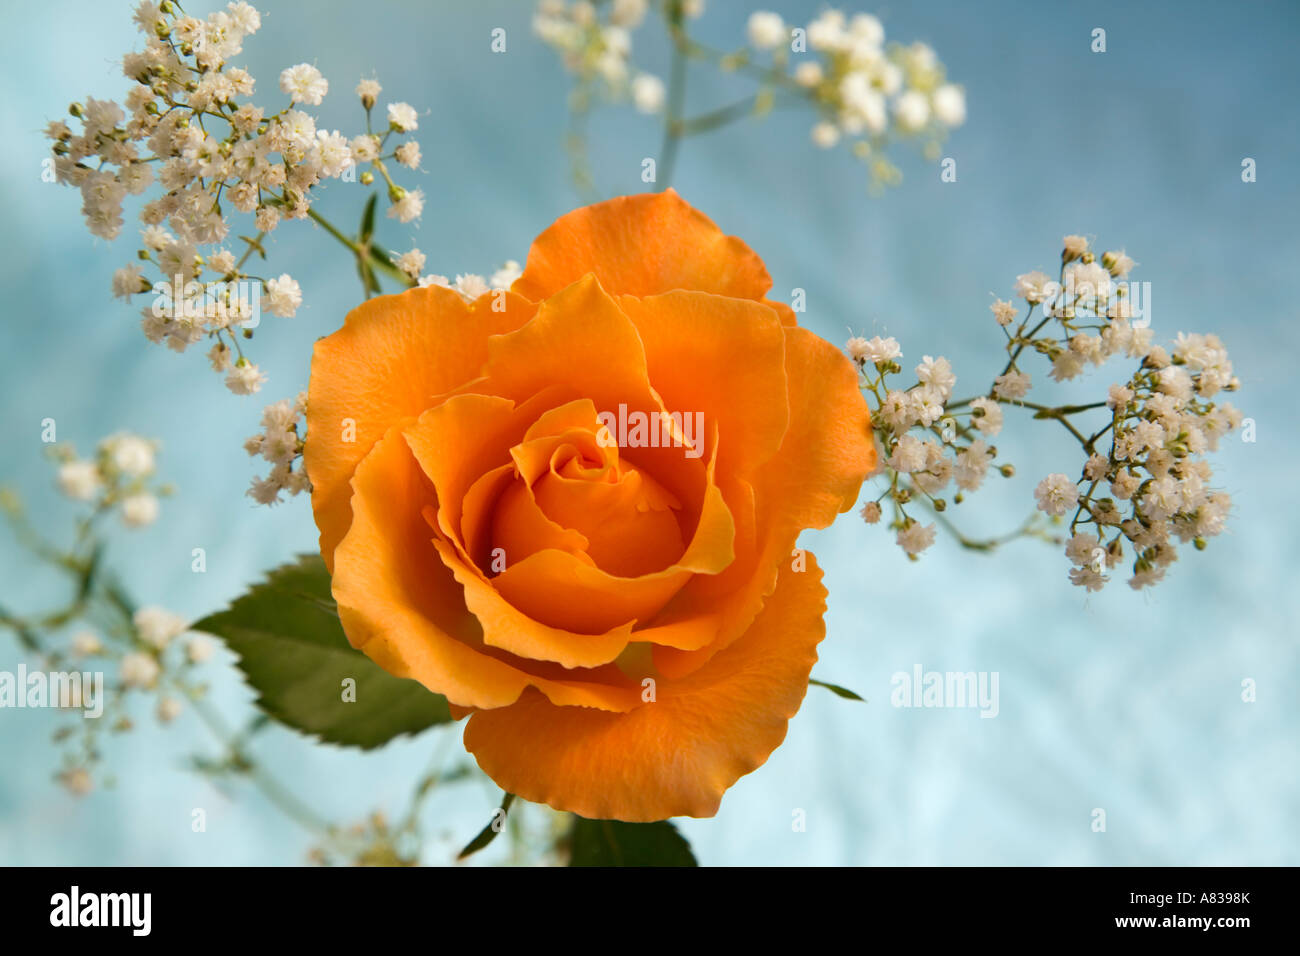 Einzelne Pfirsich rose Rosa Blume Vorderansicht mit Schleierkraut Blumen auf fleckige leicht blass blauen Hintergrund Stockfoto